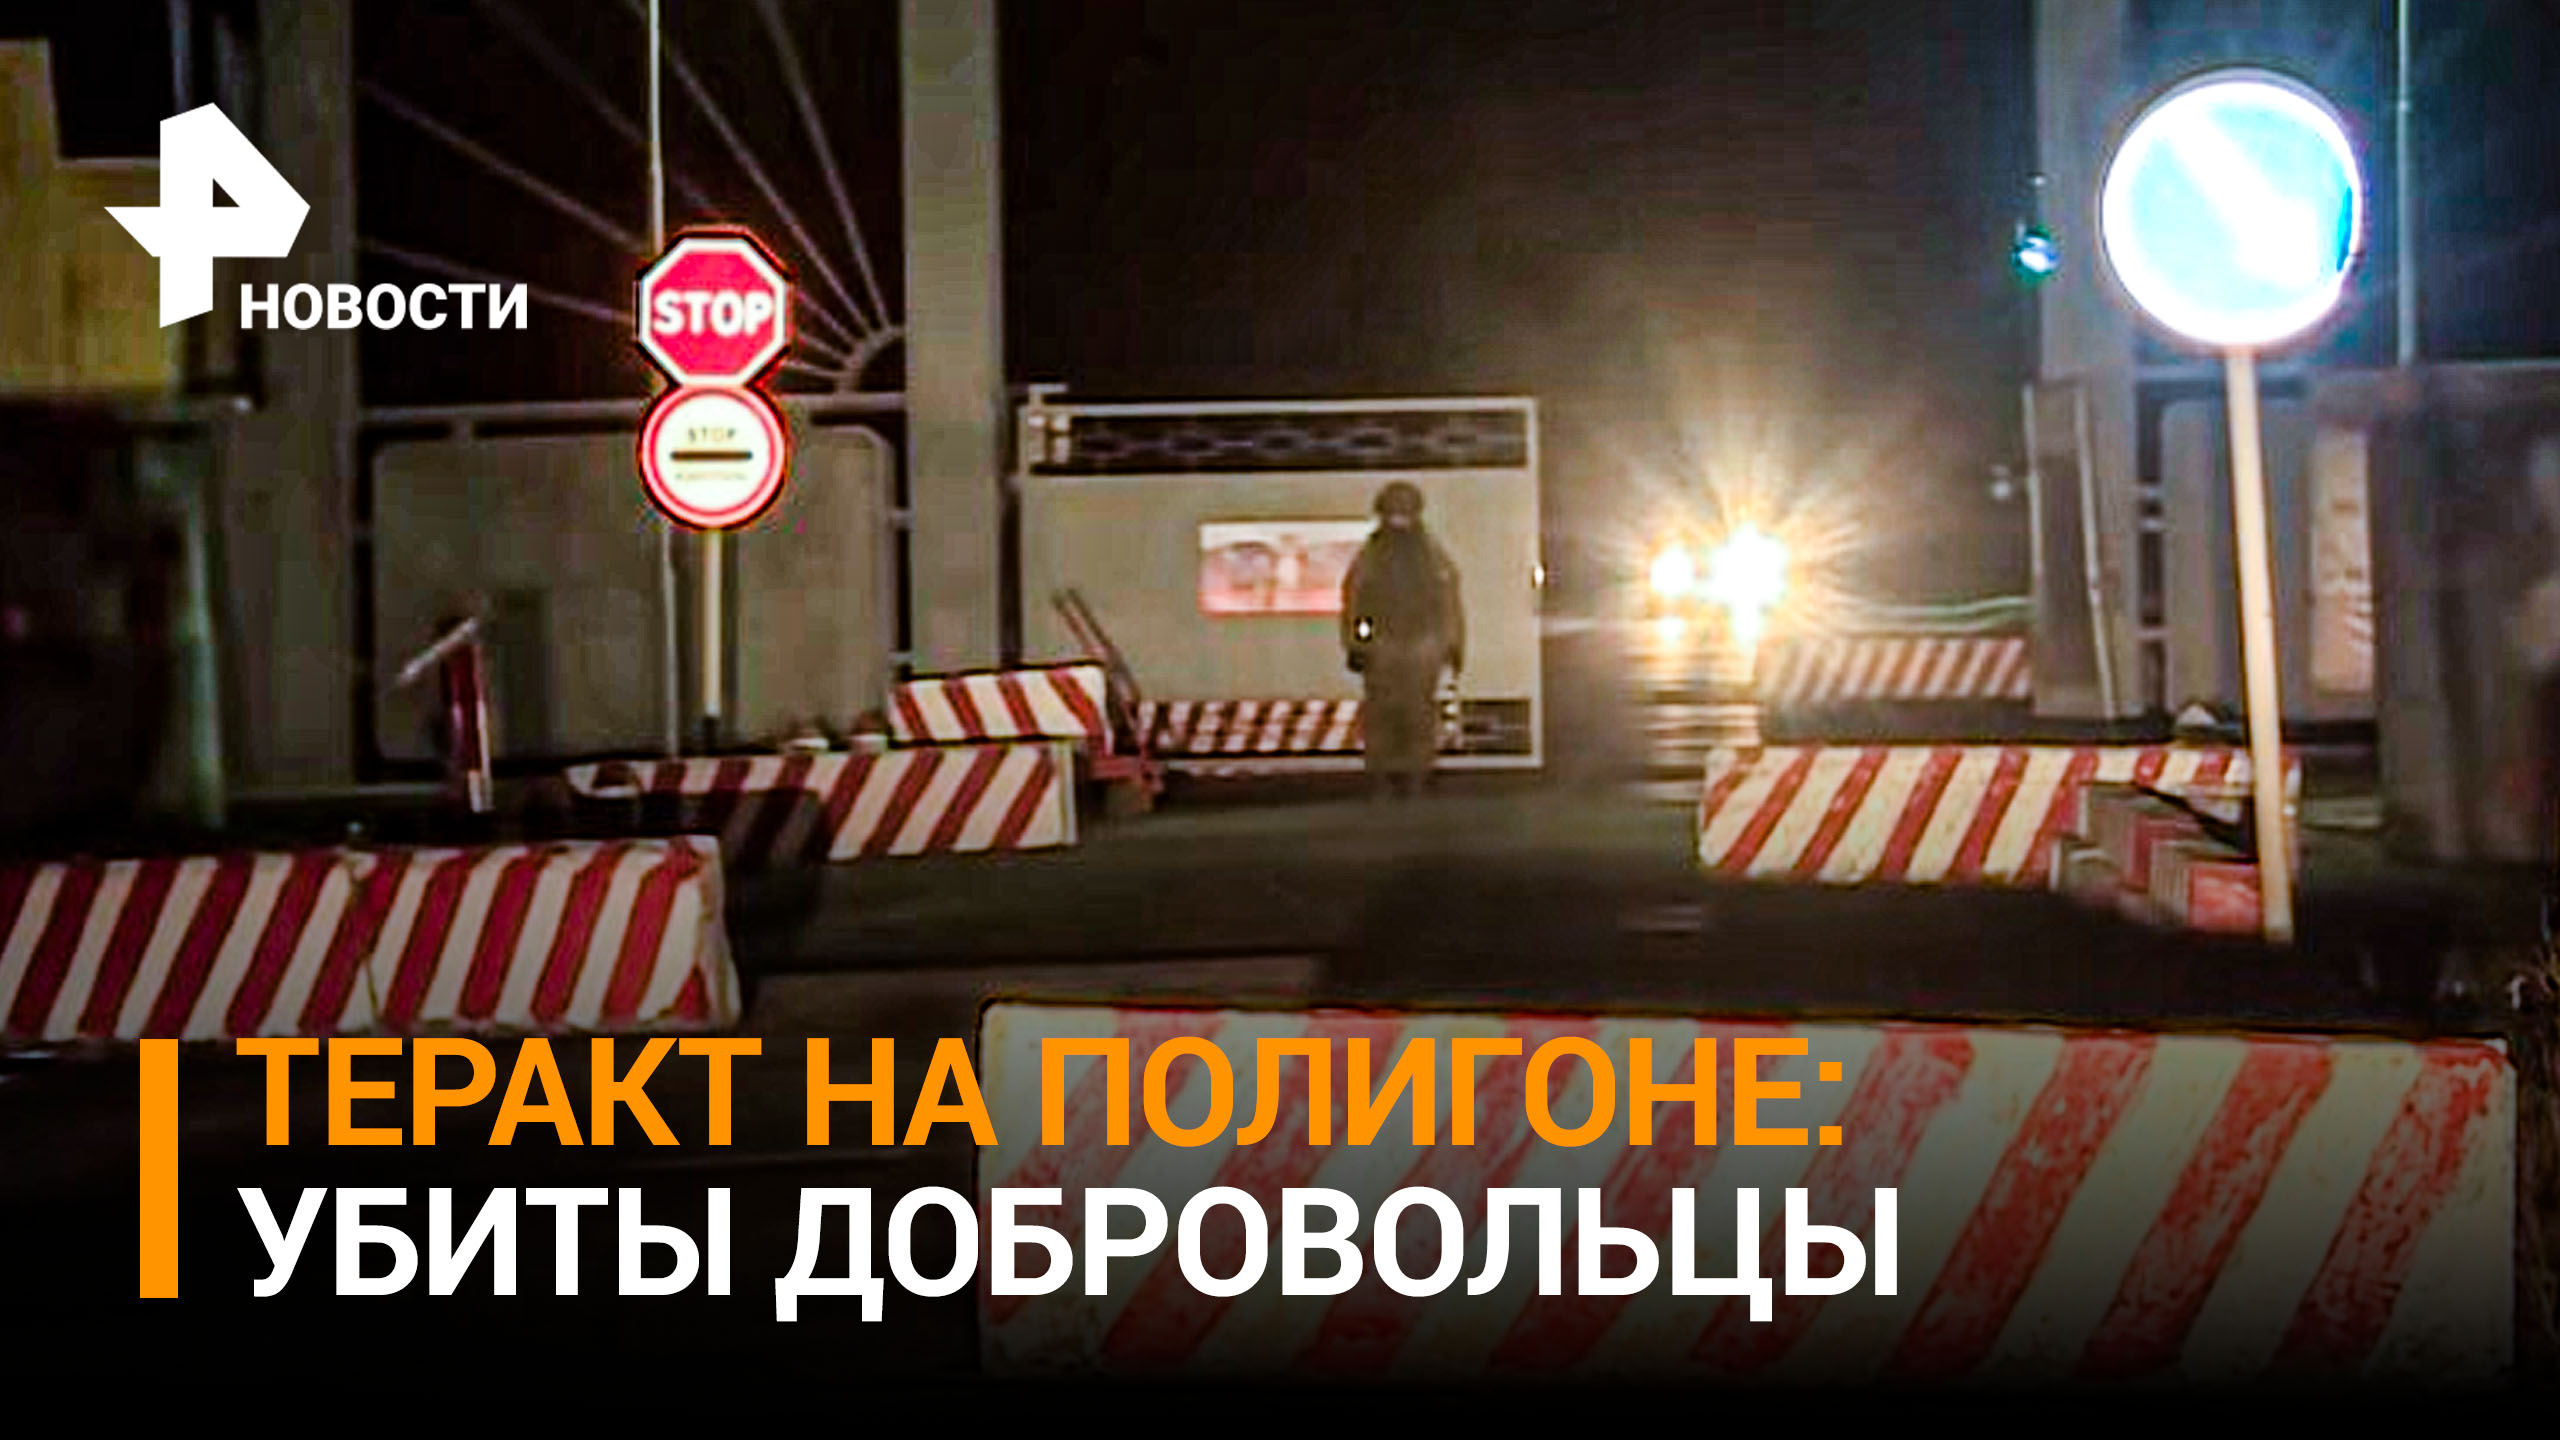 11 человек погибли, 15 пострадали в результате теракта на полигоне в Белгородской области - МО РФ